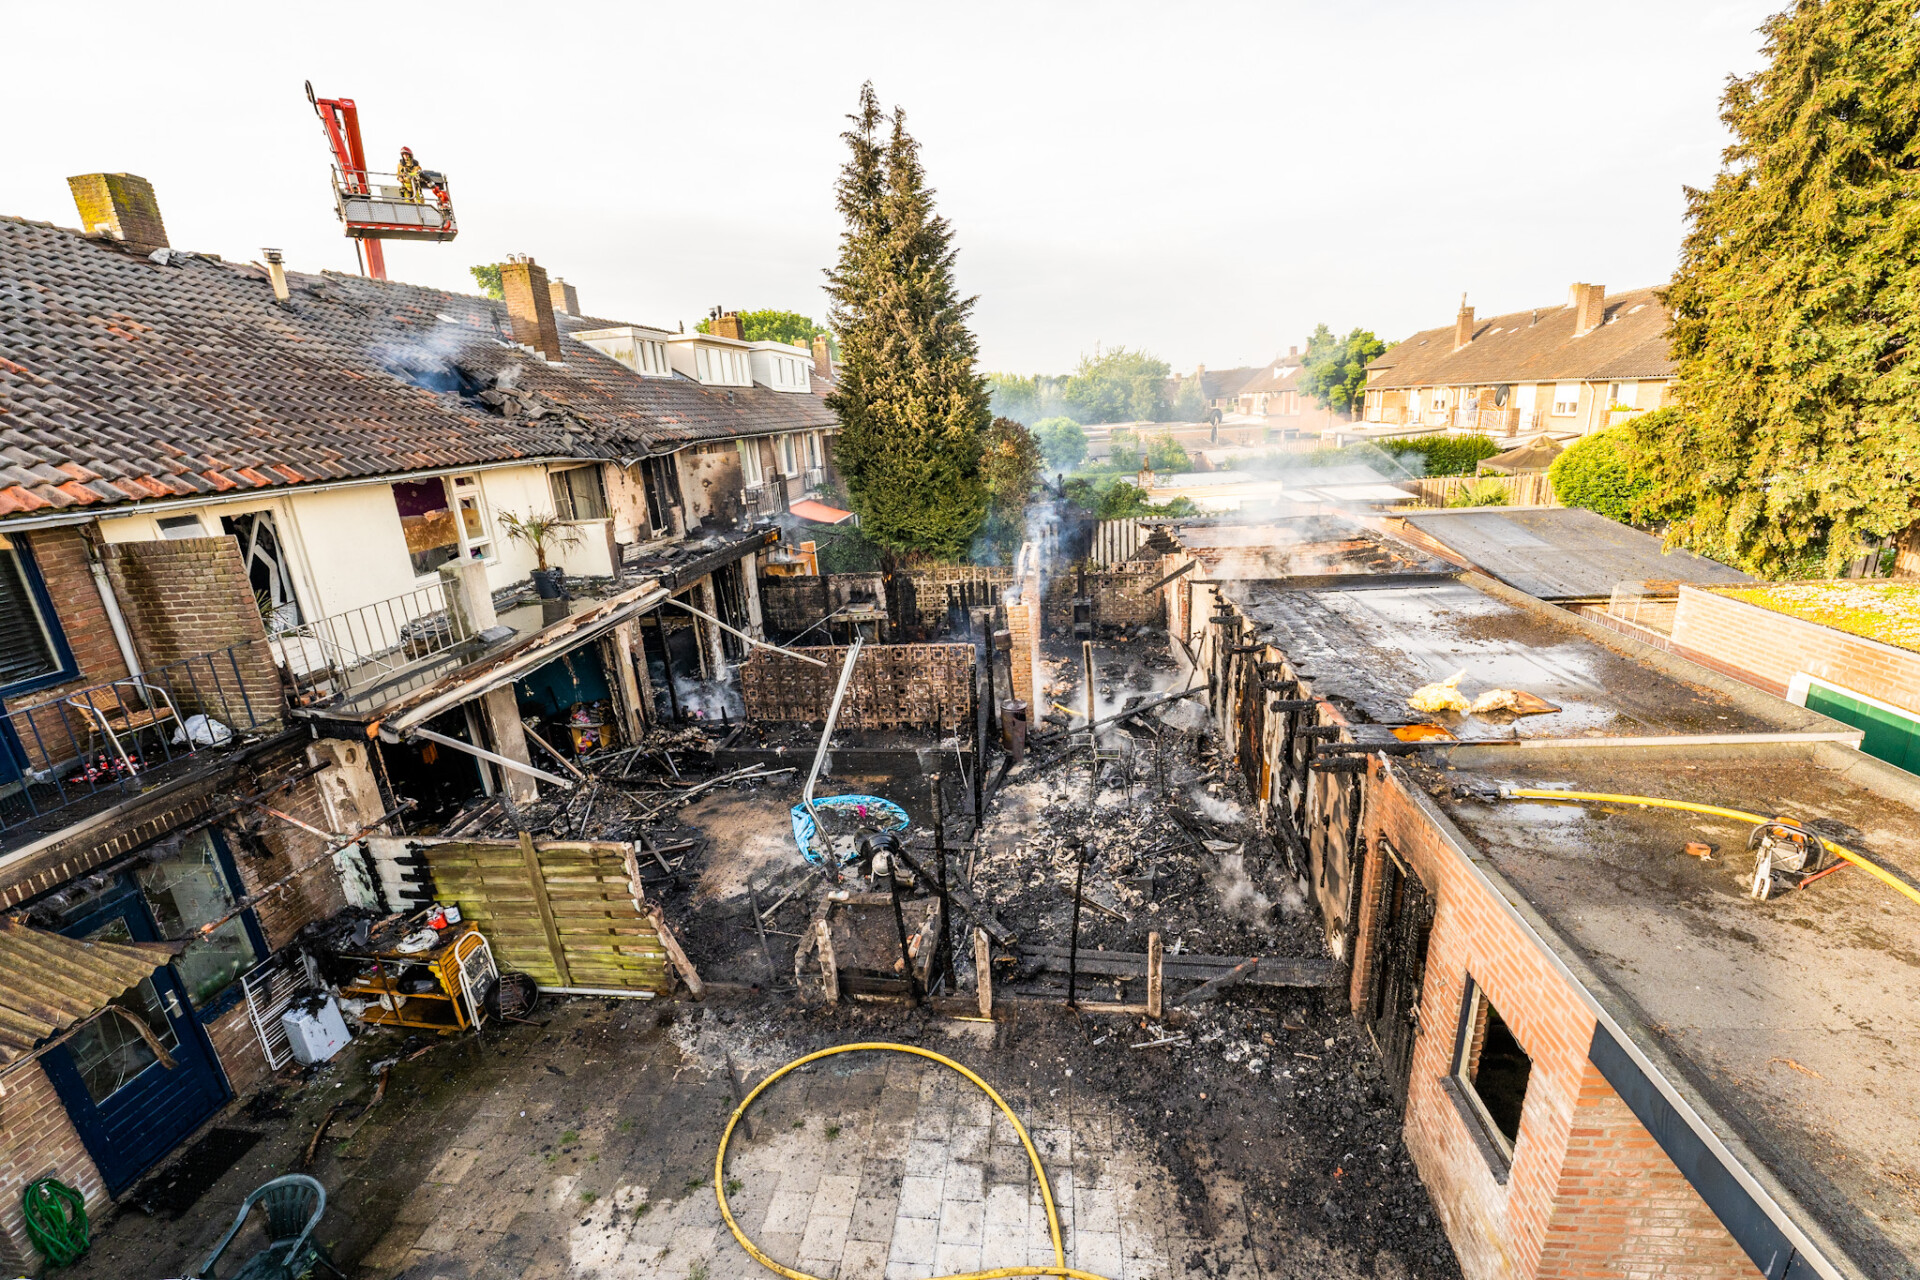 FOTOSERIE: Grote brand in Eindhoven, schuren verwoest en huizen beschadigd